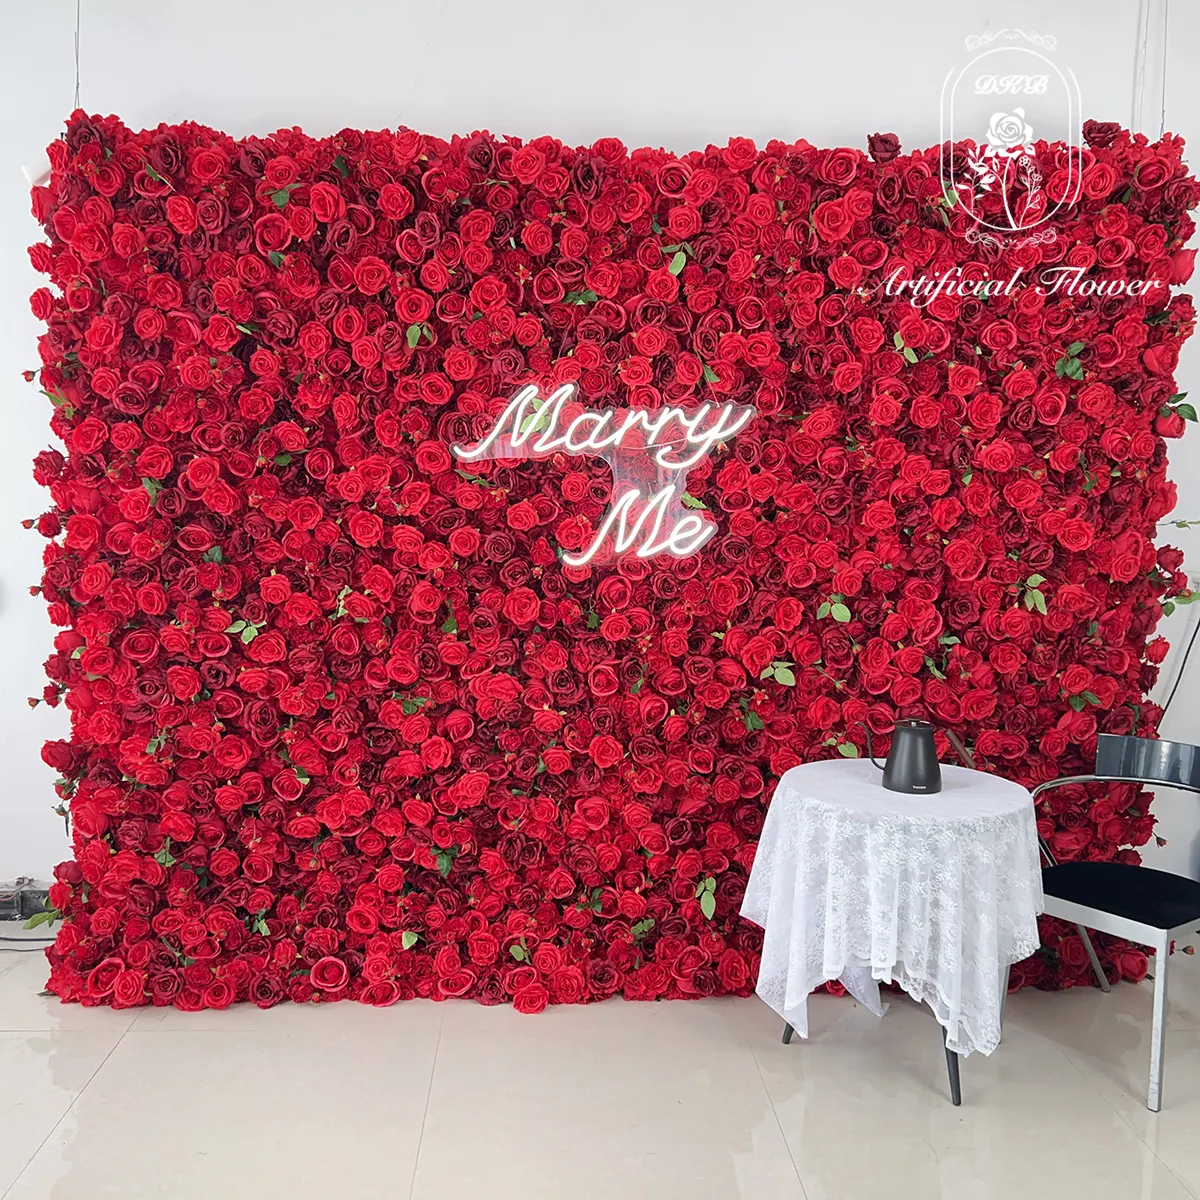 Dinding Bunga dan tongkat dekorasi pernikahan panel dinding bunga merah buatan 3d bunga mawar lukisan dinding ruang tamu pernikahan ho